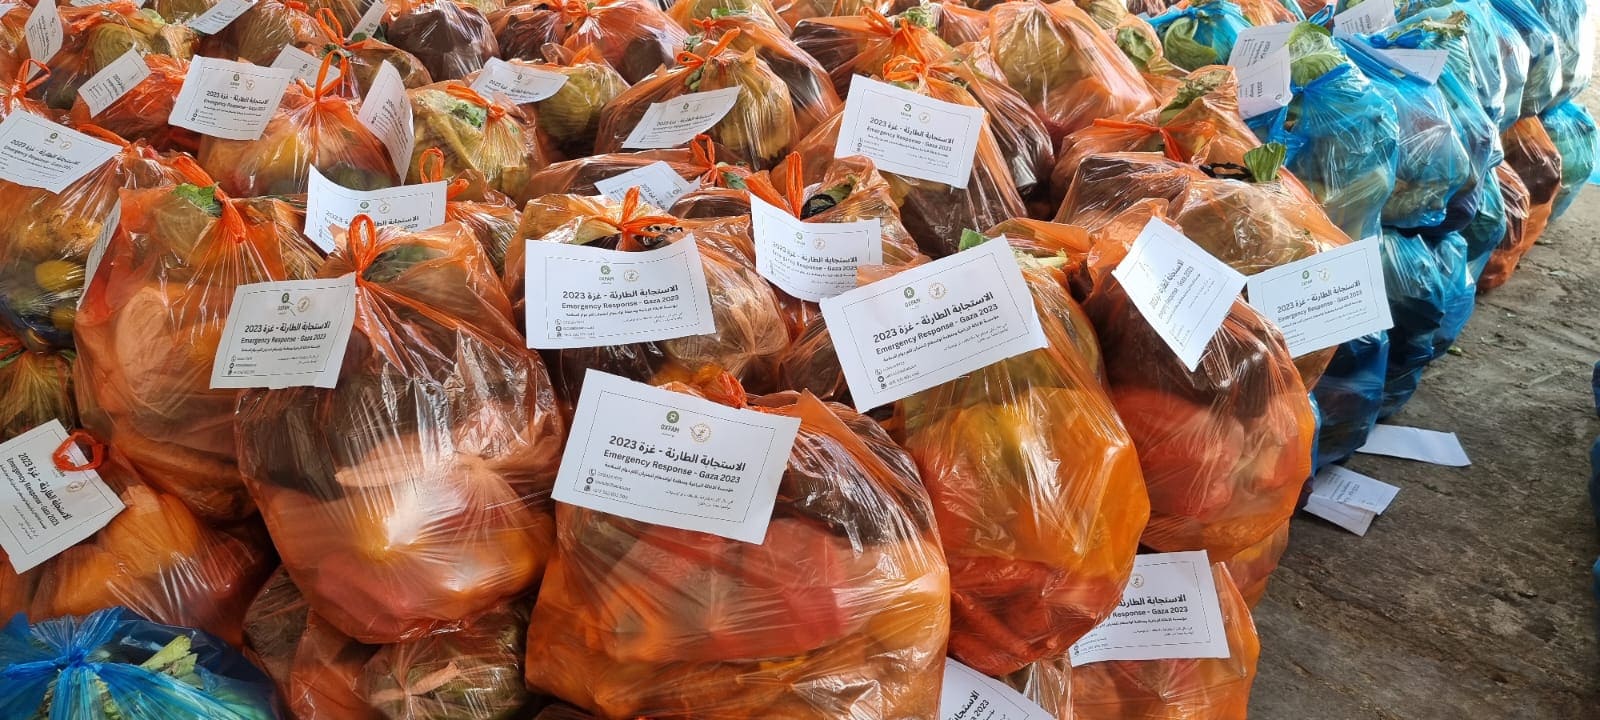 樂施會早前透過在地合作伙伴「the Palestinian Agricultural Relief Committee (PARC)」合作，向南加沙境內家庭派發蔬菜包。